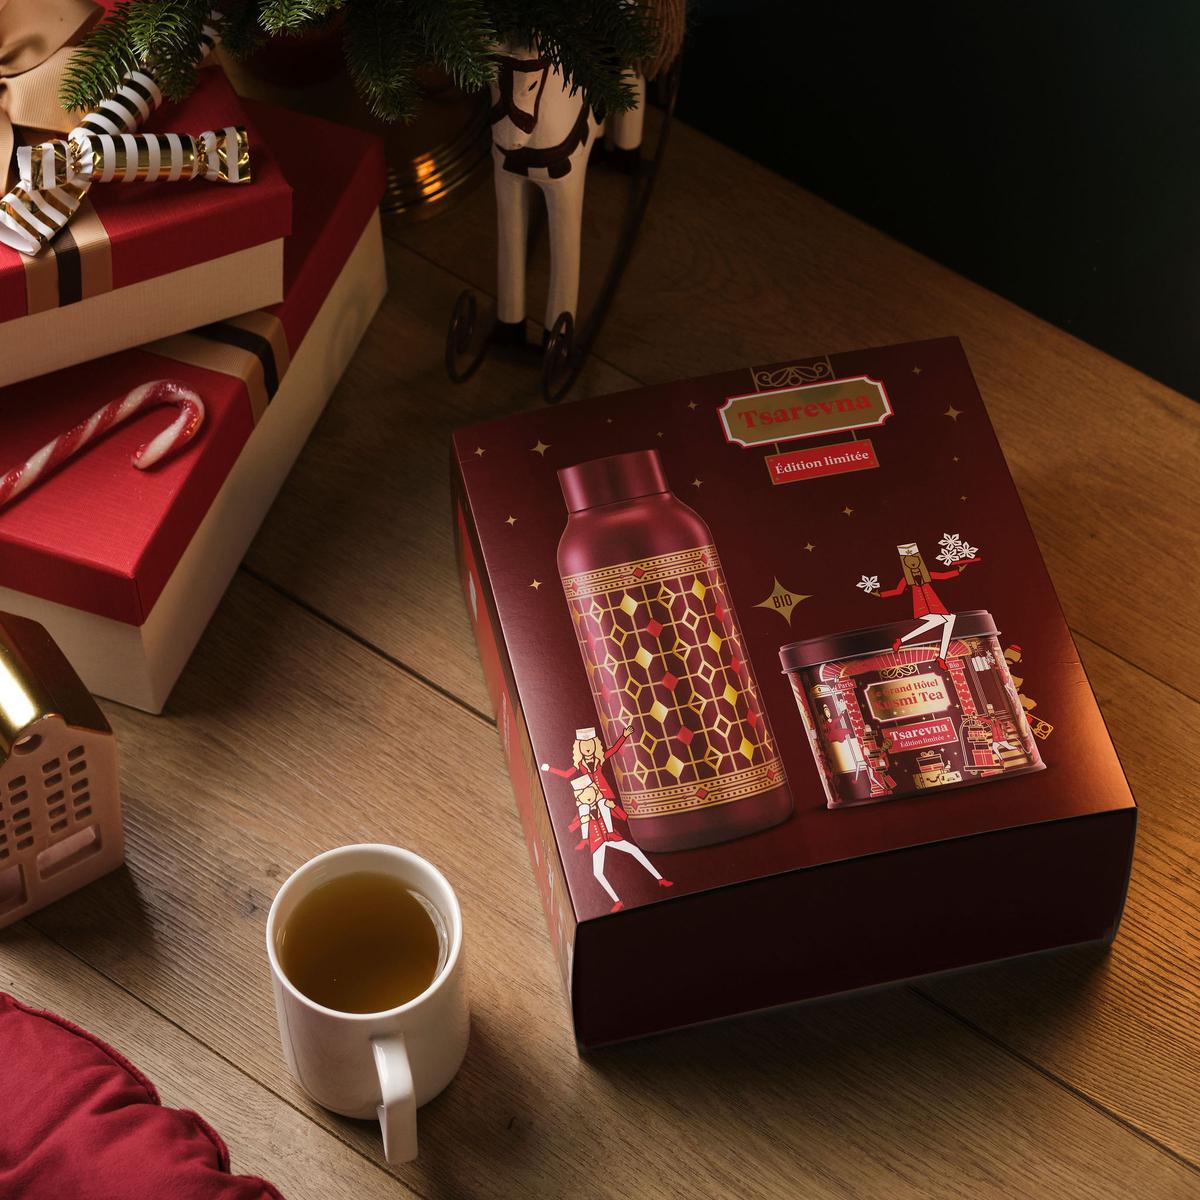 Kusmi Tea - Coffret Tsarevna Bio Edition 2022 - Idée Cadeau de Noël -  Coffret d'une boîte de thé noir aromatisé avec une bouteille isotherme :  : Épicerie